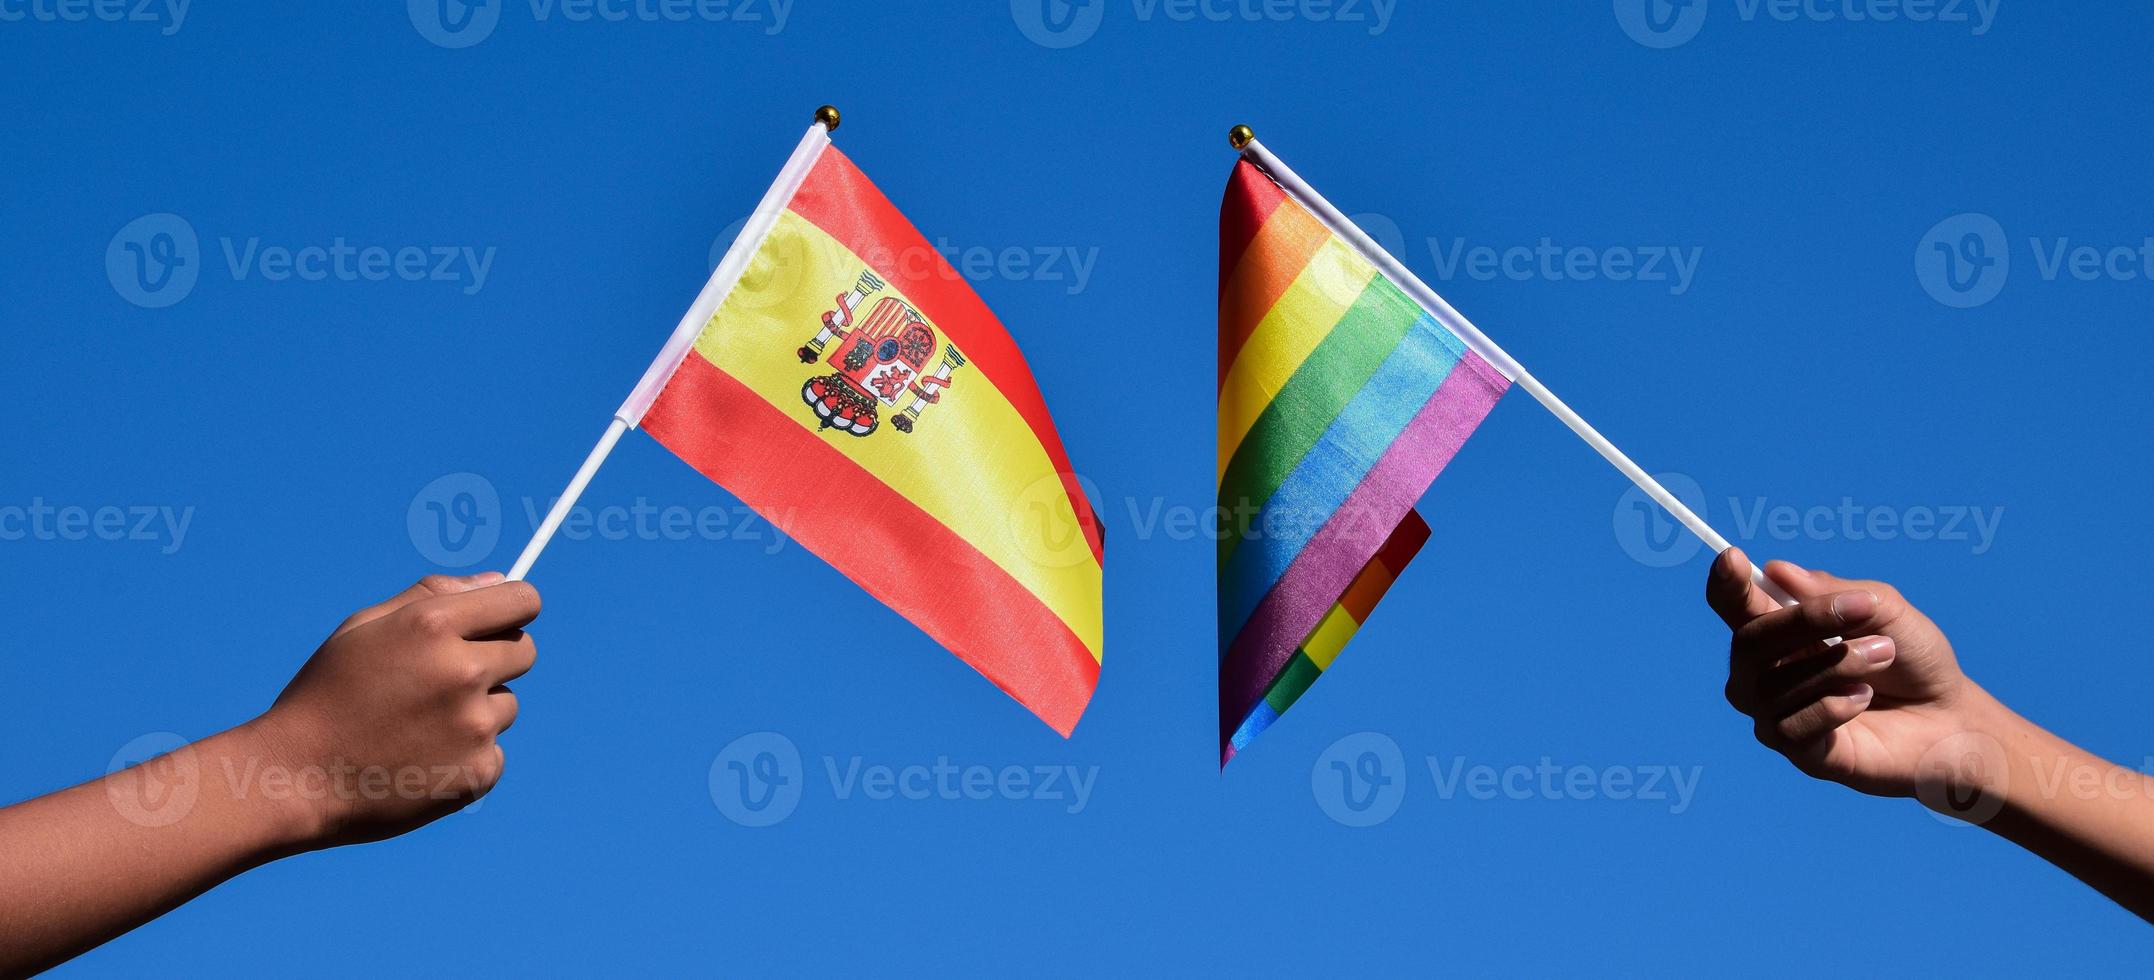 drapeau espagnol et drapeau arc-en-ciel, symbole lgbt, tenant dans les mains, fond bleu ciel, concept pour la célébration lgbt en espagne et dans le monde pendant le mois de la fierté, juin, mise au point douce et sélective, espace de copie. photo